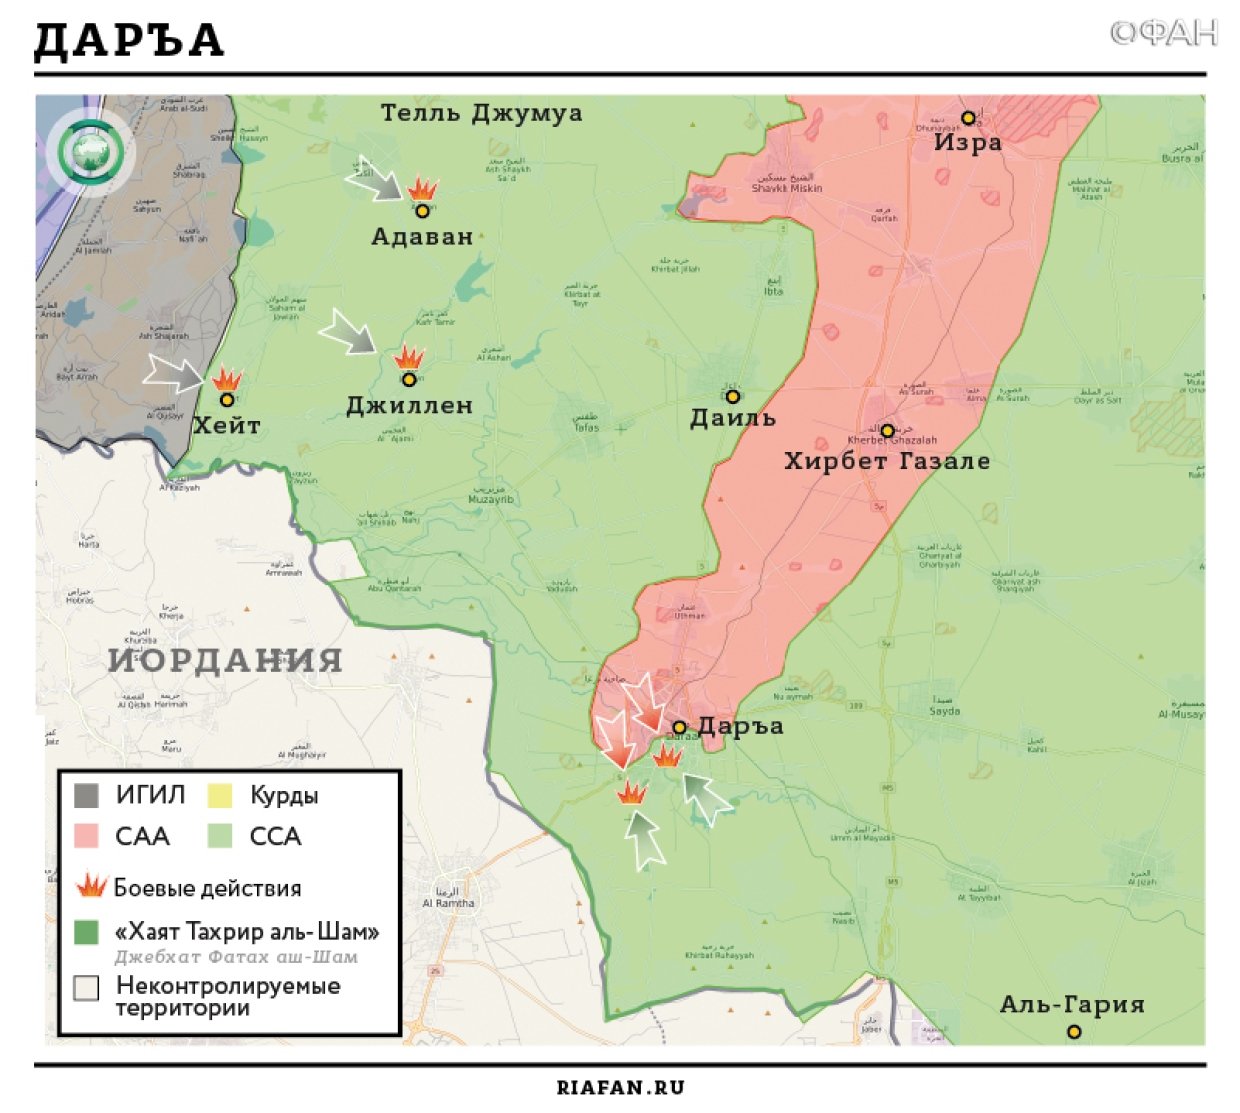 Сирия новости 21 марта 19.30: несколько СВУ сдетонировало в Эль-Кунейтре, в Латакии идут бои между САА и радикалами